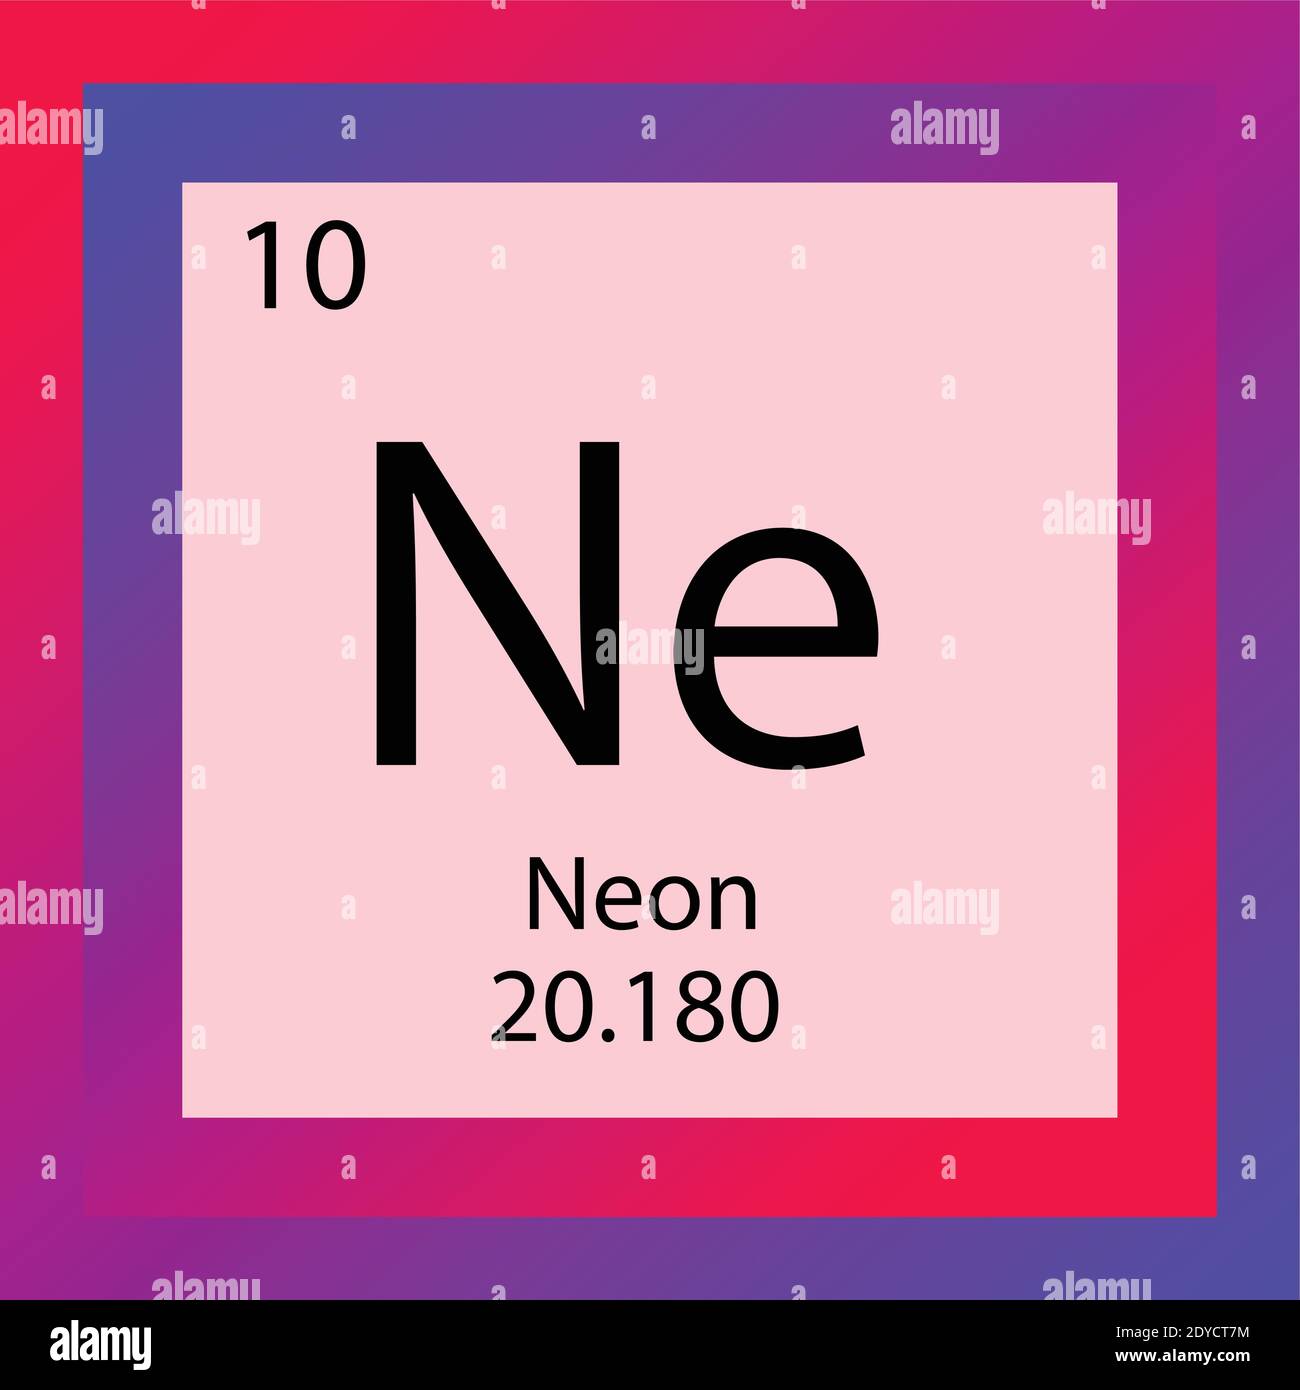 Tabella periodica elementi chimici Neon NE. Illustrazione vettoriale a elemento singolo, icona dell'elemento gas Noble con massa molare e numero atomico. Illustrazione Vettoriale